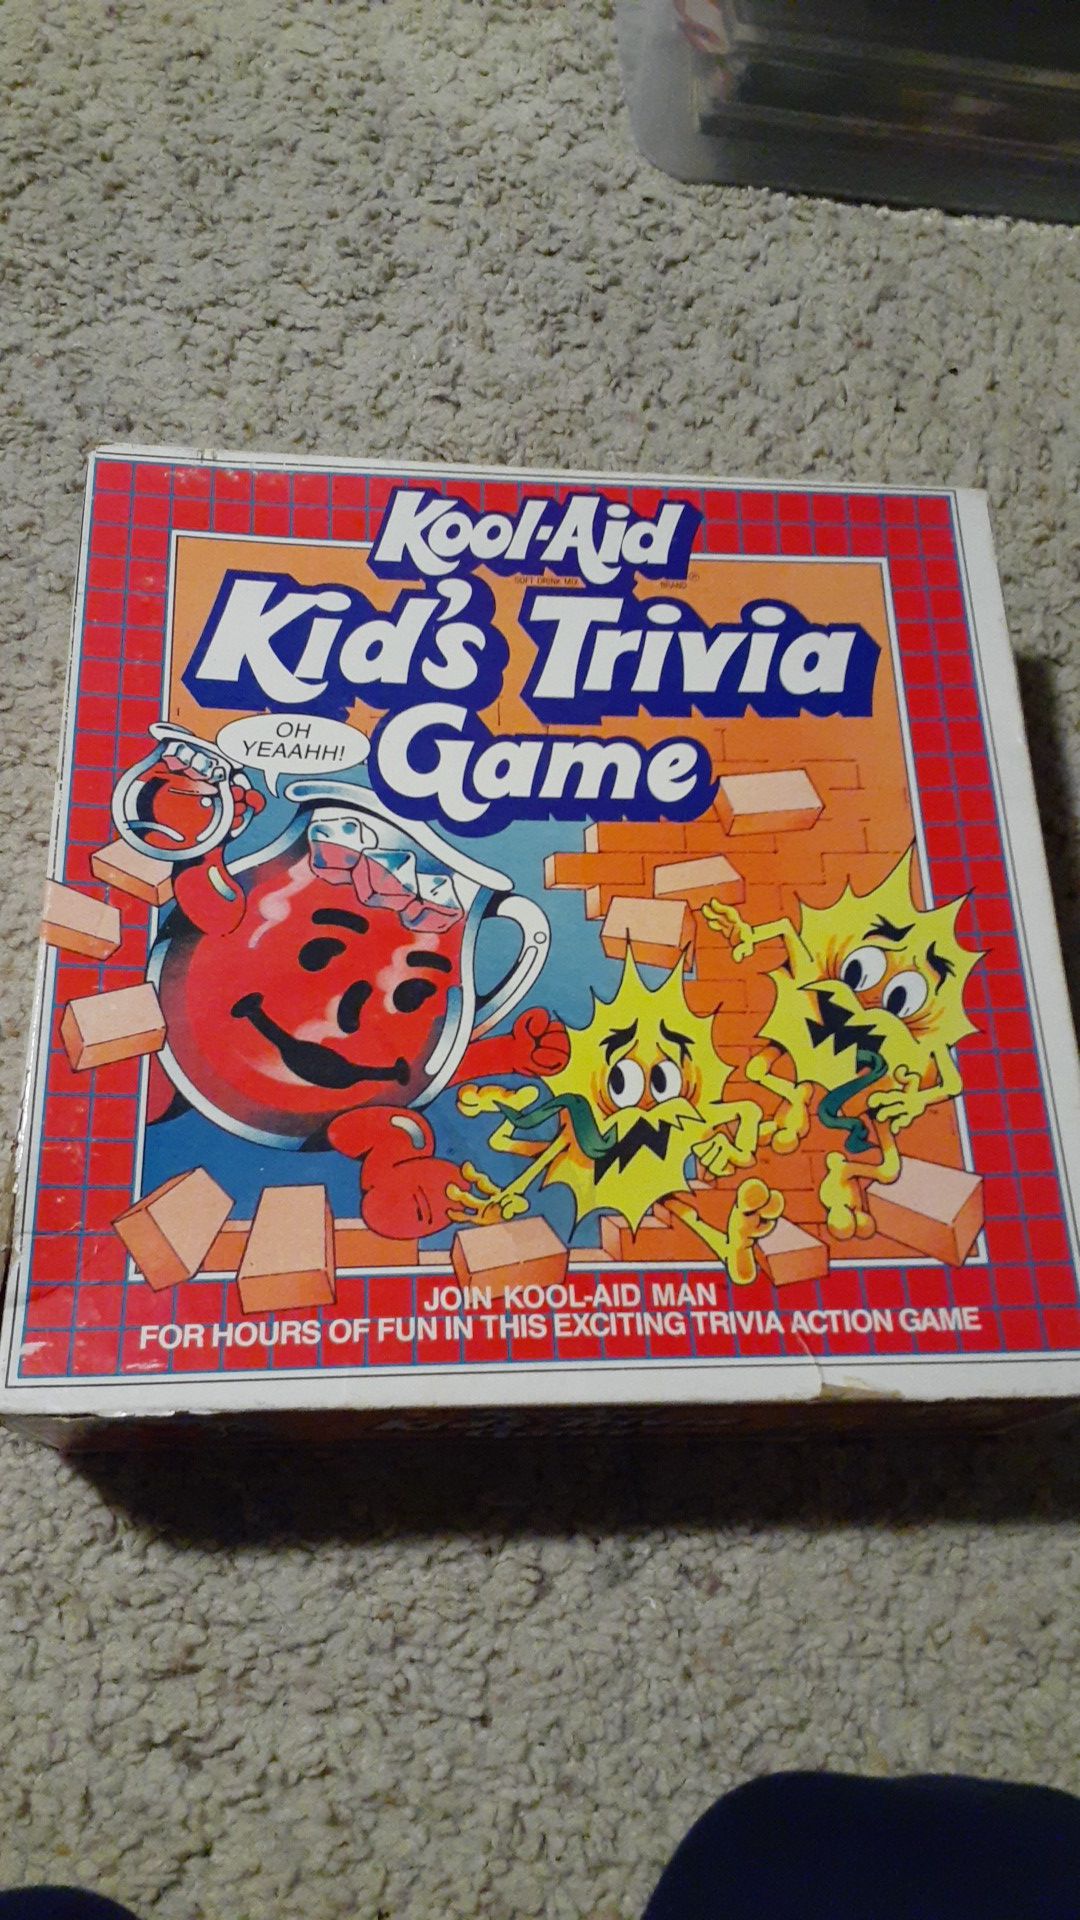 Kool aid kid's trivia game. Very rare.